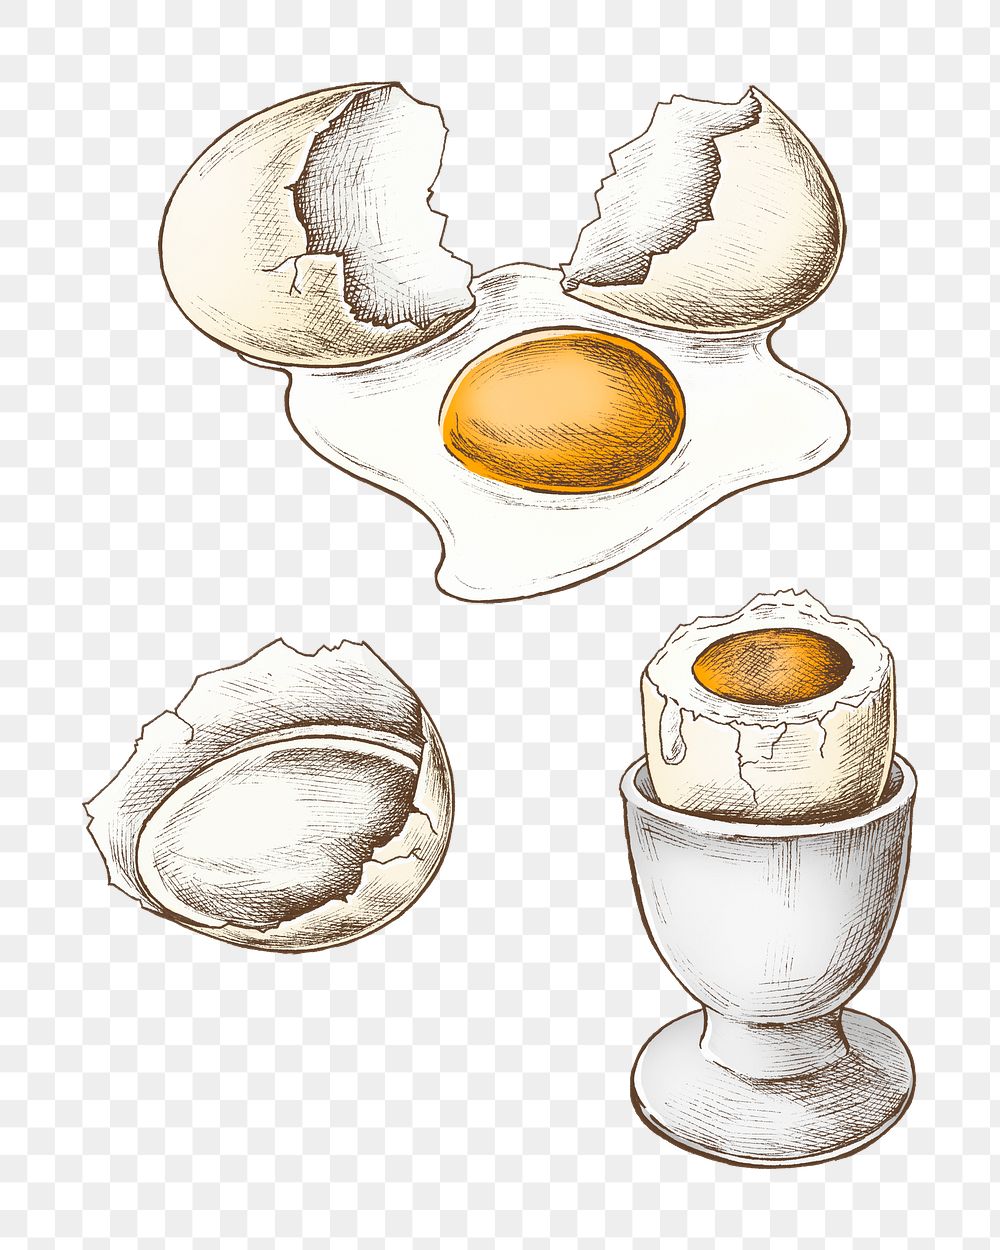 Boiled egg png illustration, transparent background